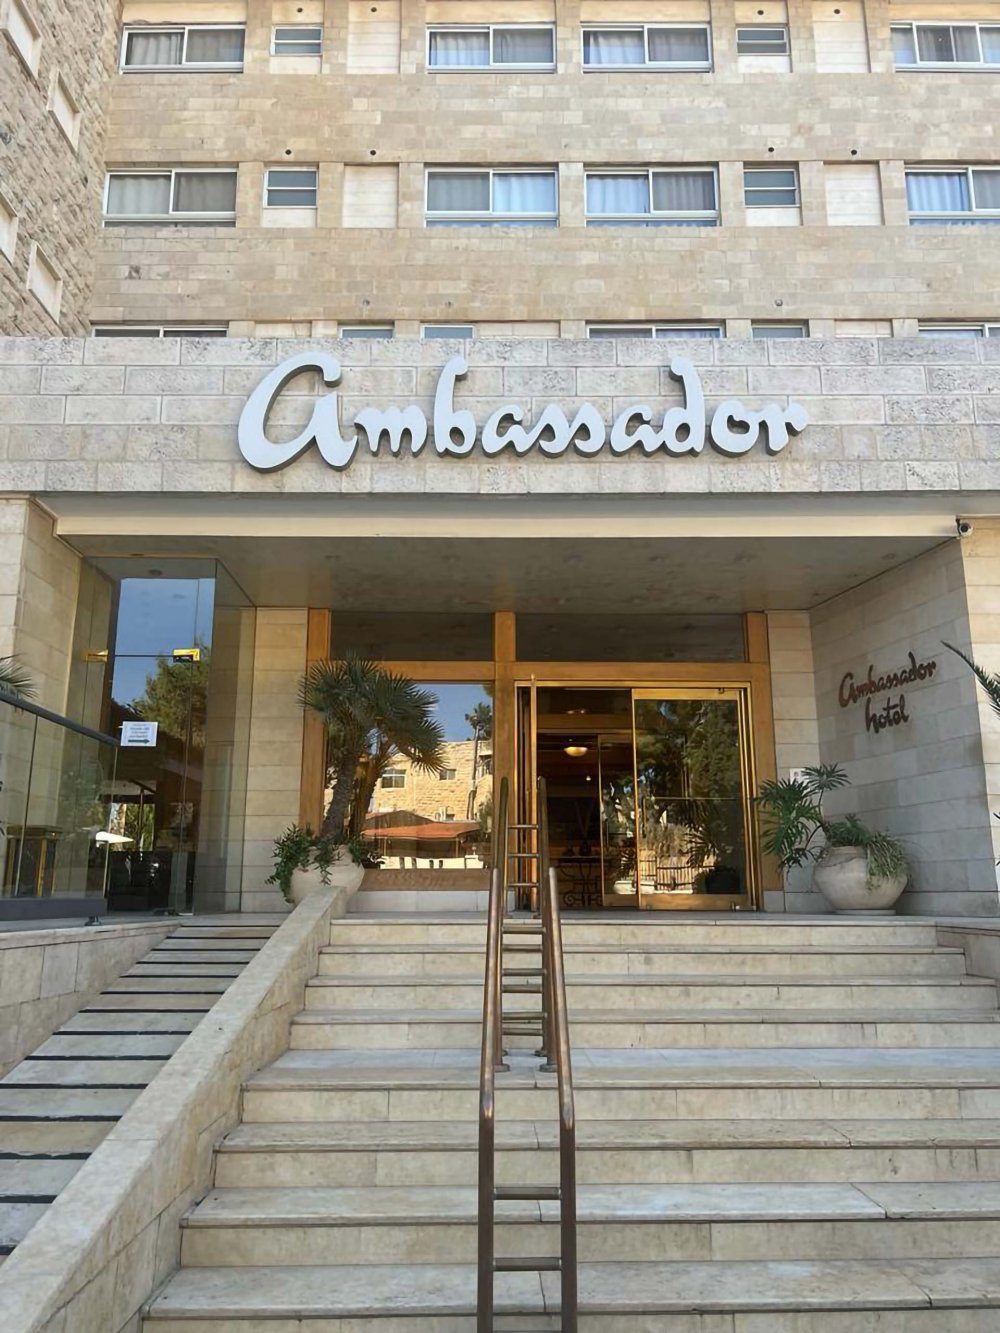 The entrance to the Ambassador Hotel in East Jerusalem